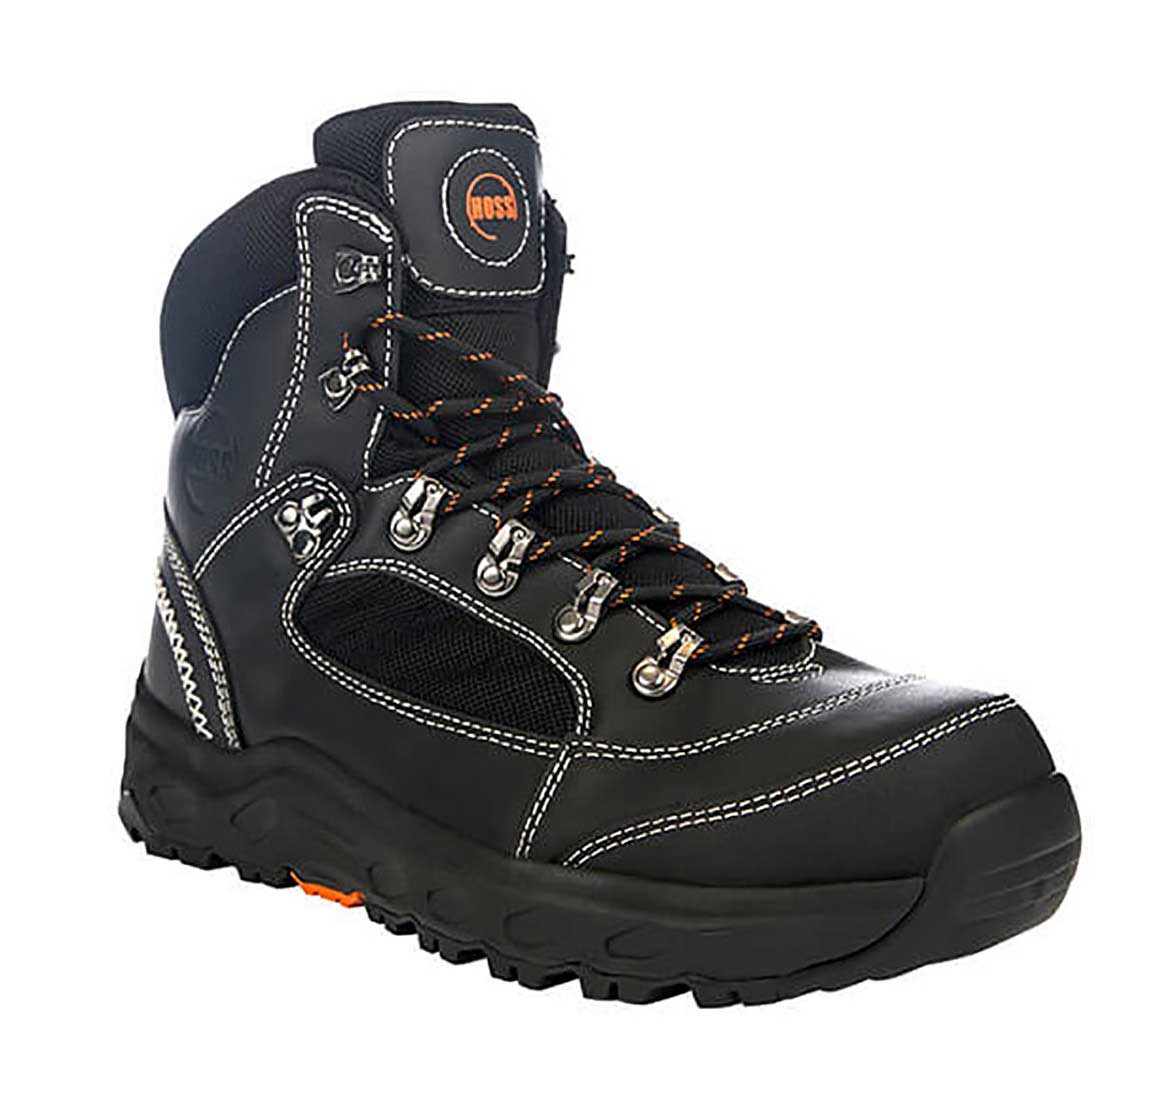 Hoss Boots Blocker Black - 60102 - Men's 6 Waterproof Aluminum Toe Slip Resistant Wedge Sole Work Boot